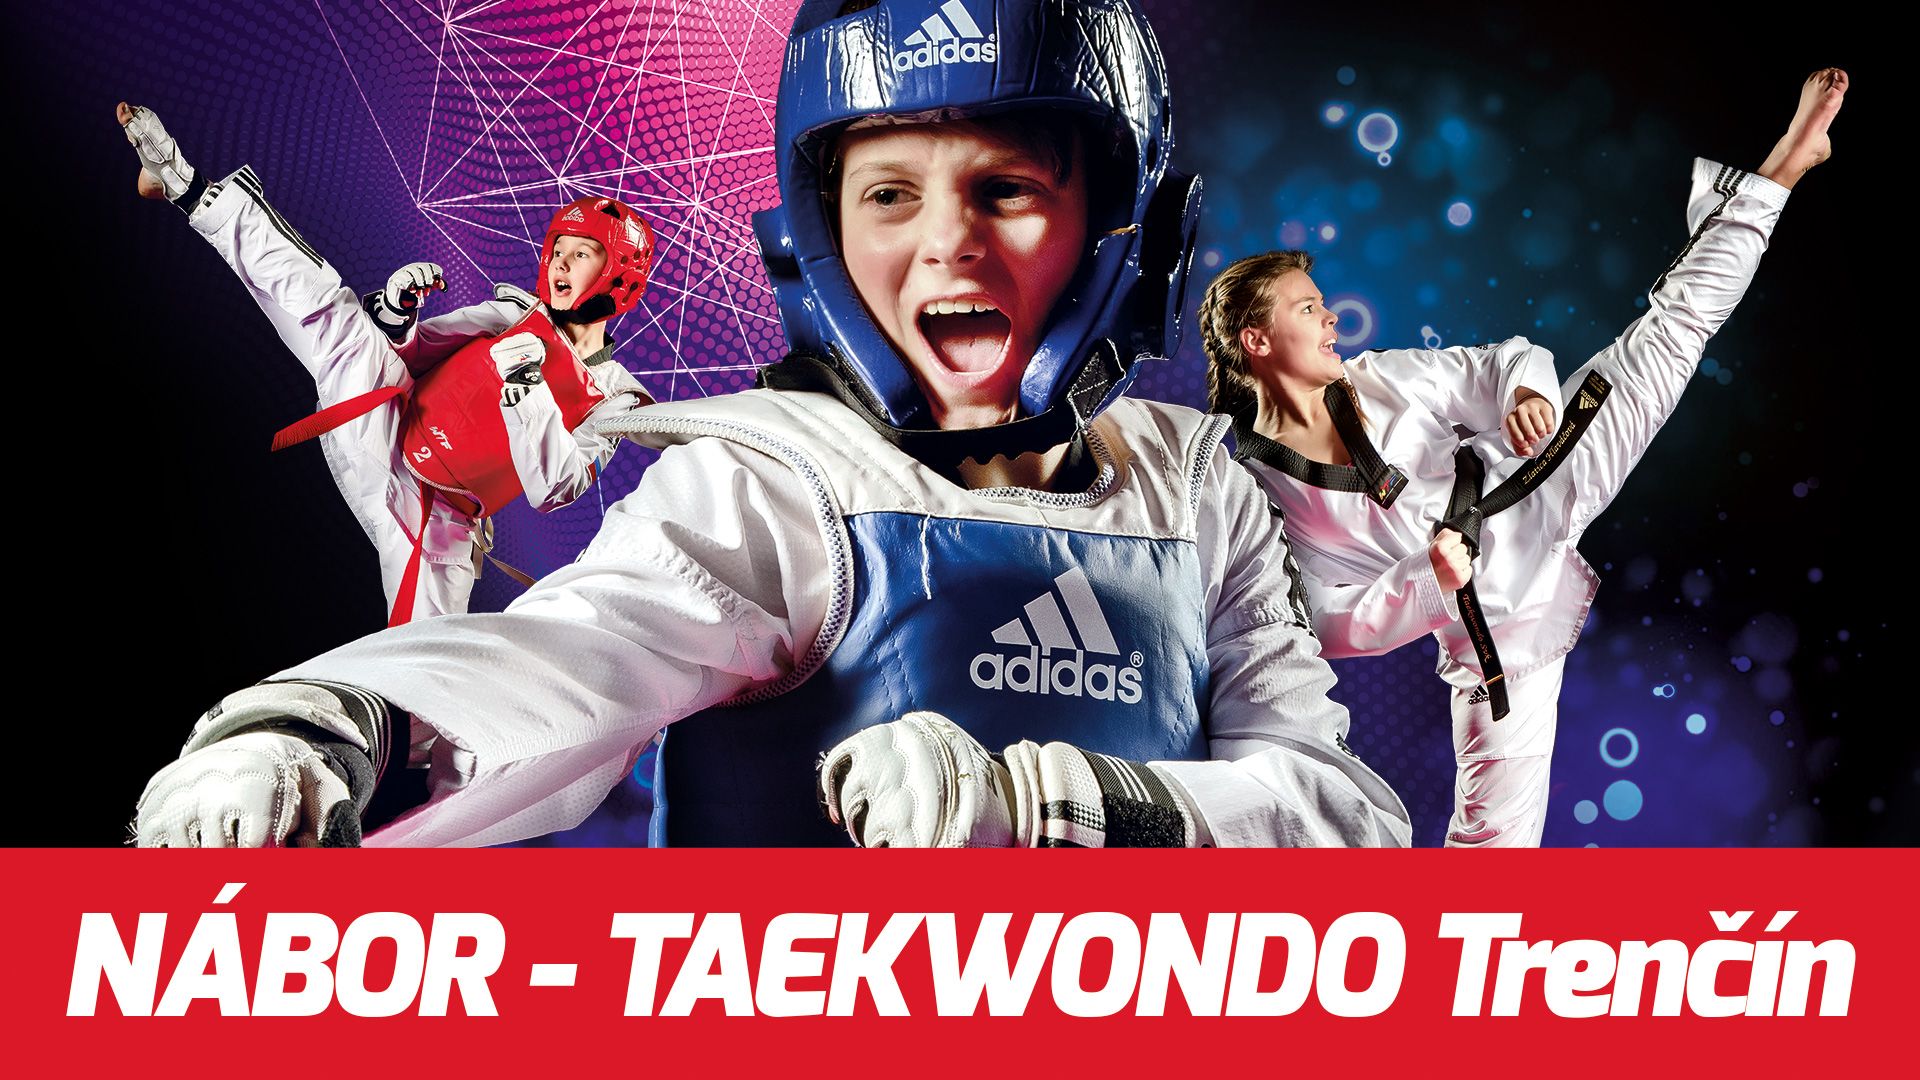 Taekwondo - olympijské bojové umenie